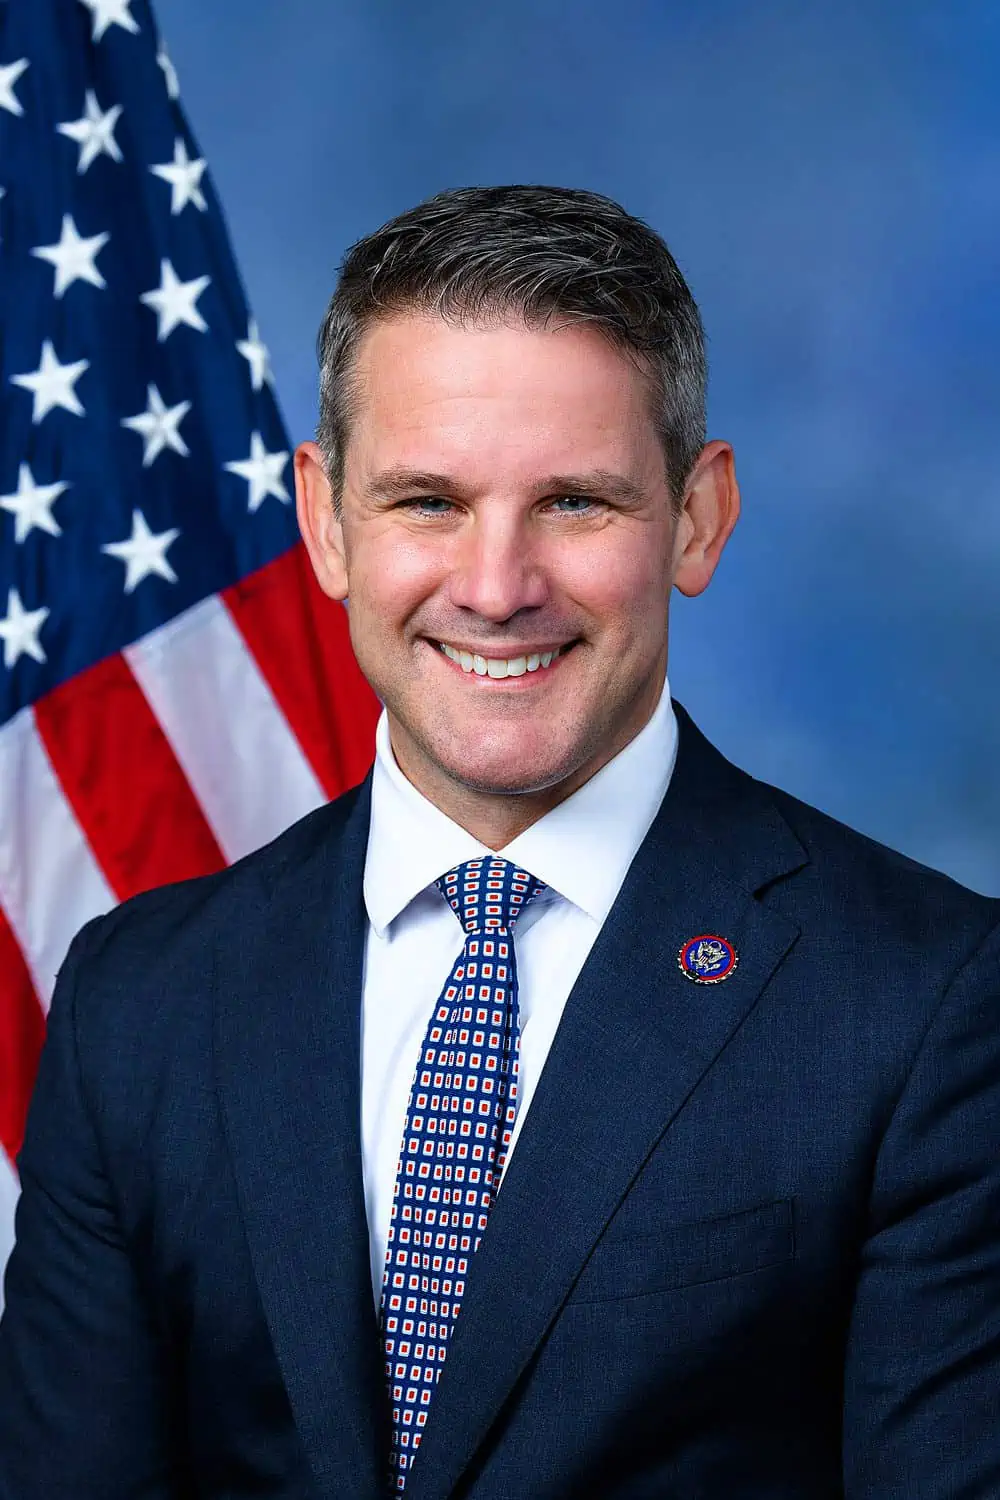 Adam Kinzinger

Party: Republican
Role: U.S. Representative for Illinois's 16th congressional district